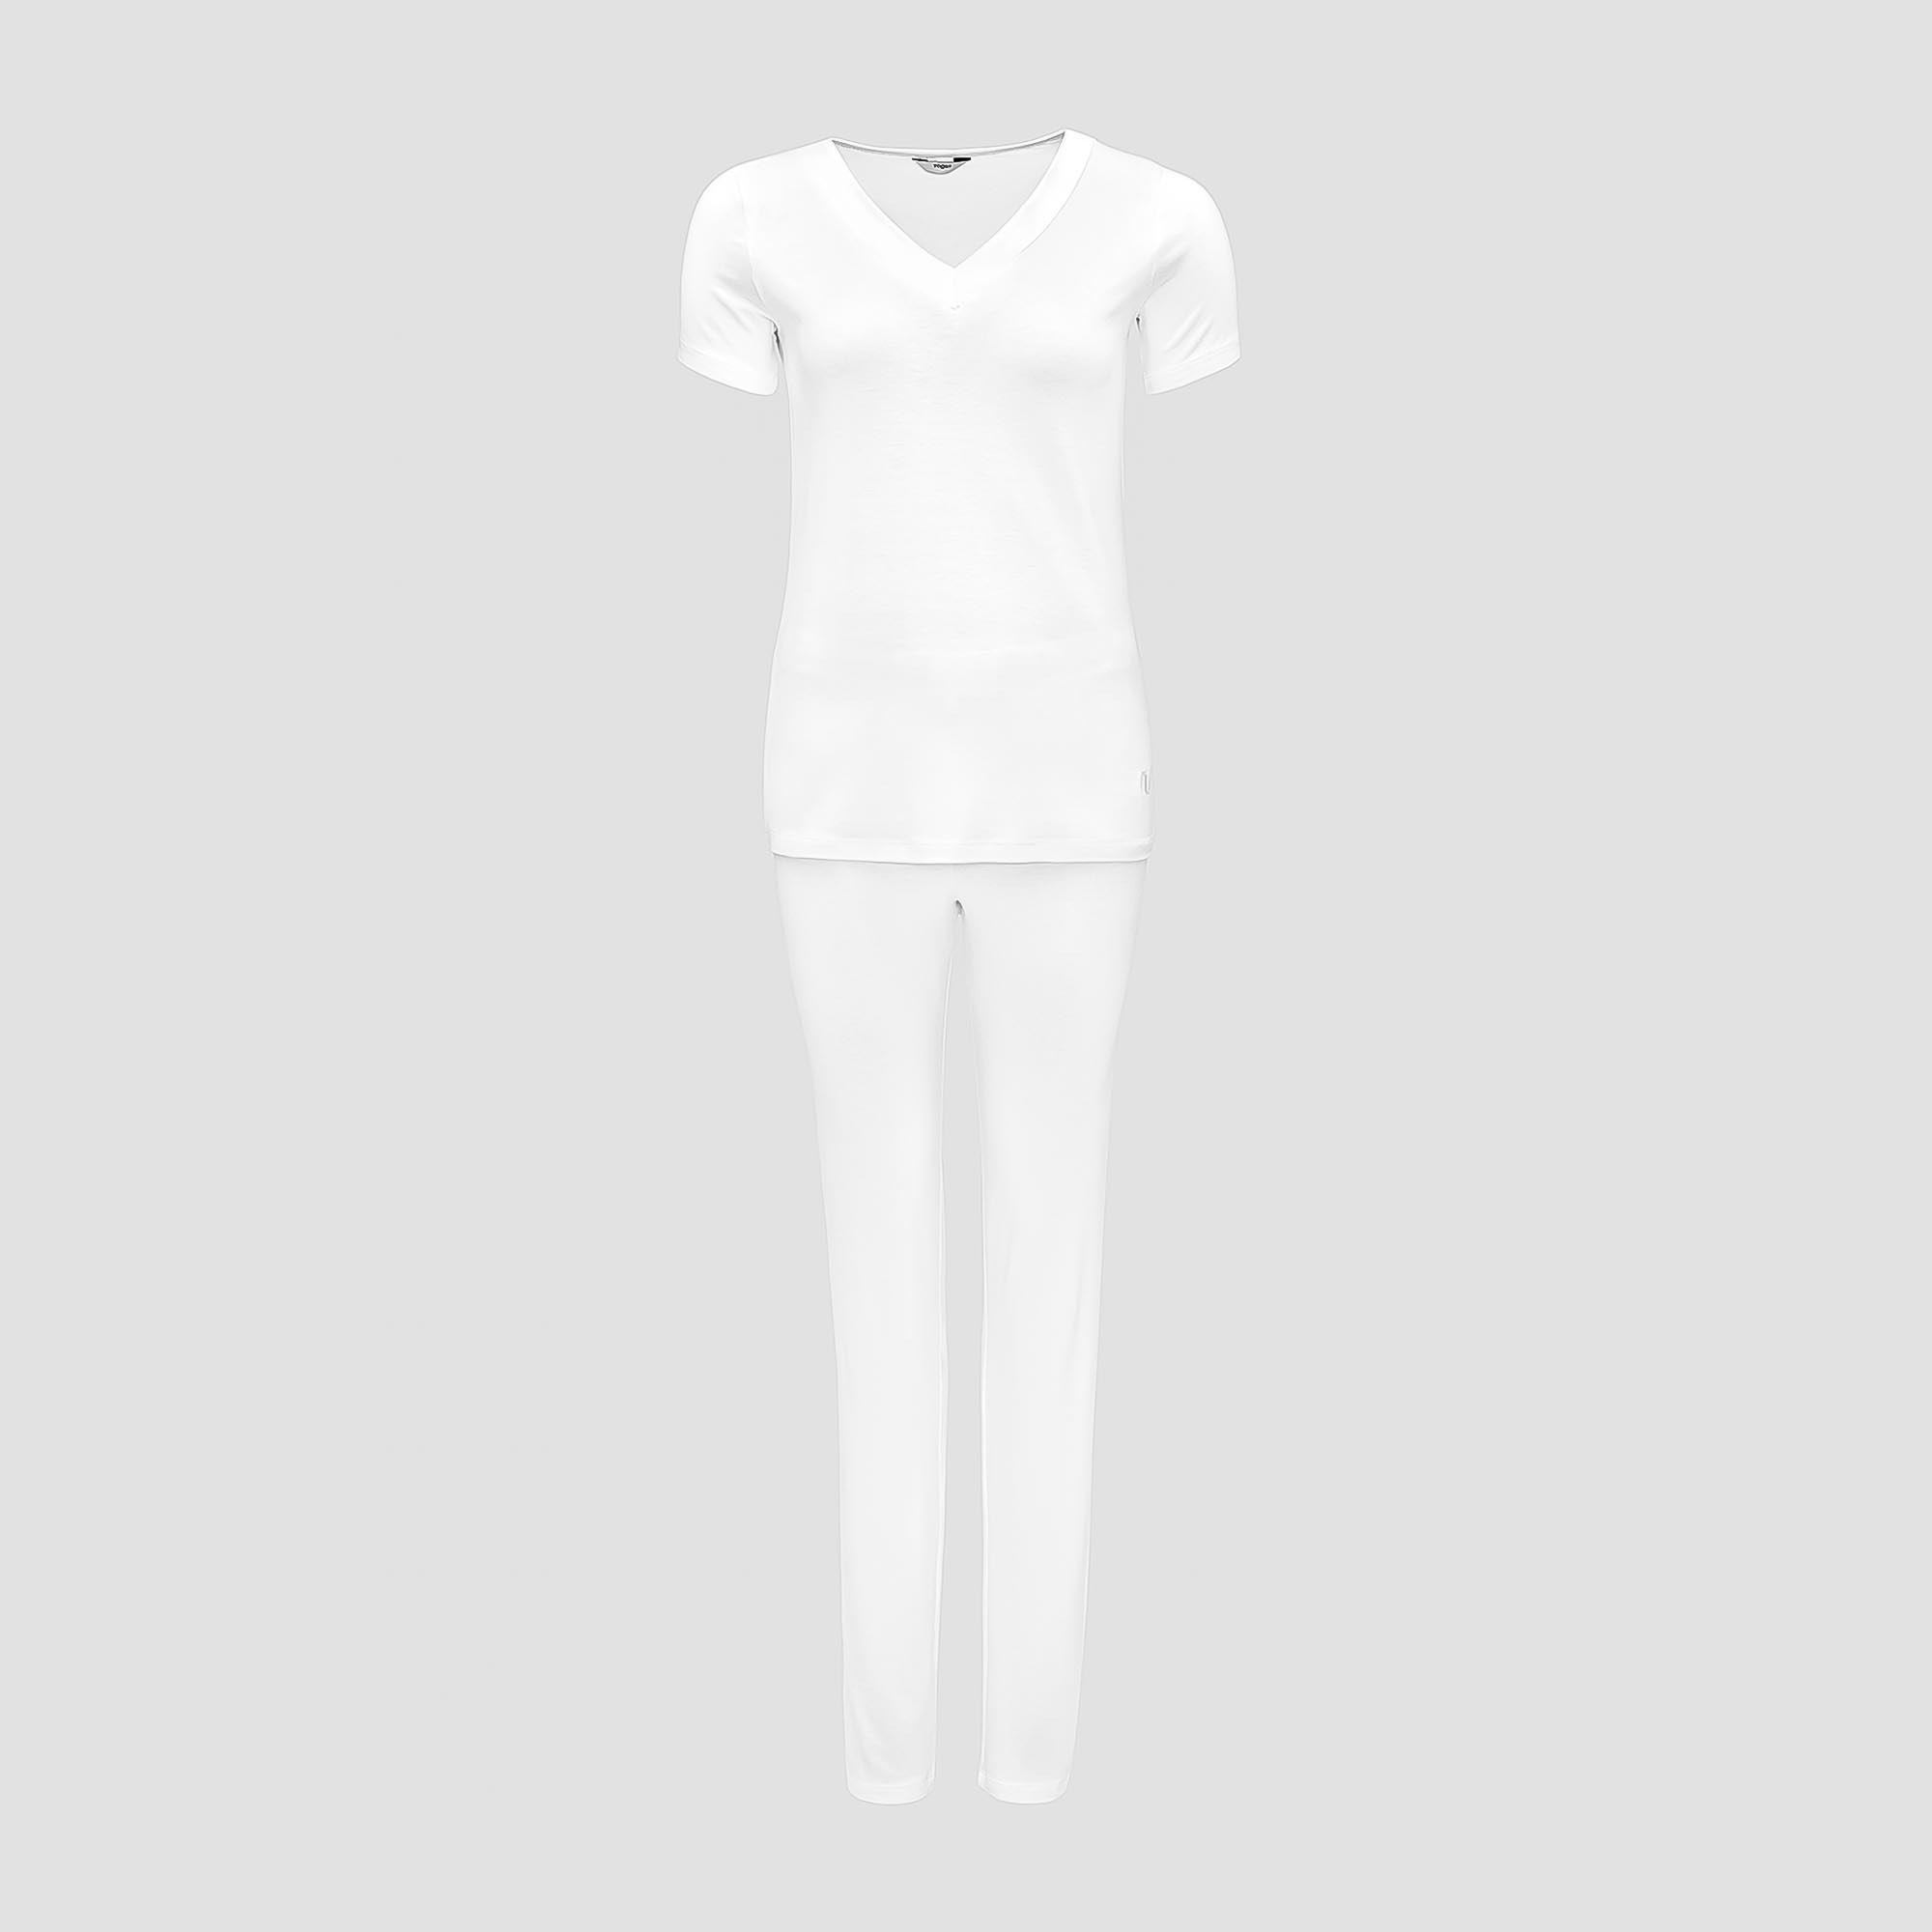 Пижама Togas Ингелла белая женская M(46) 2 предмета жен пижама с шортами инь янь белый р 52